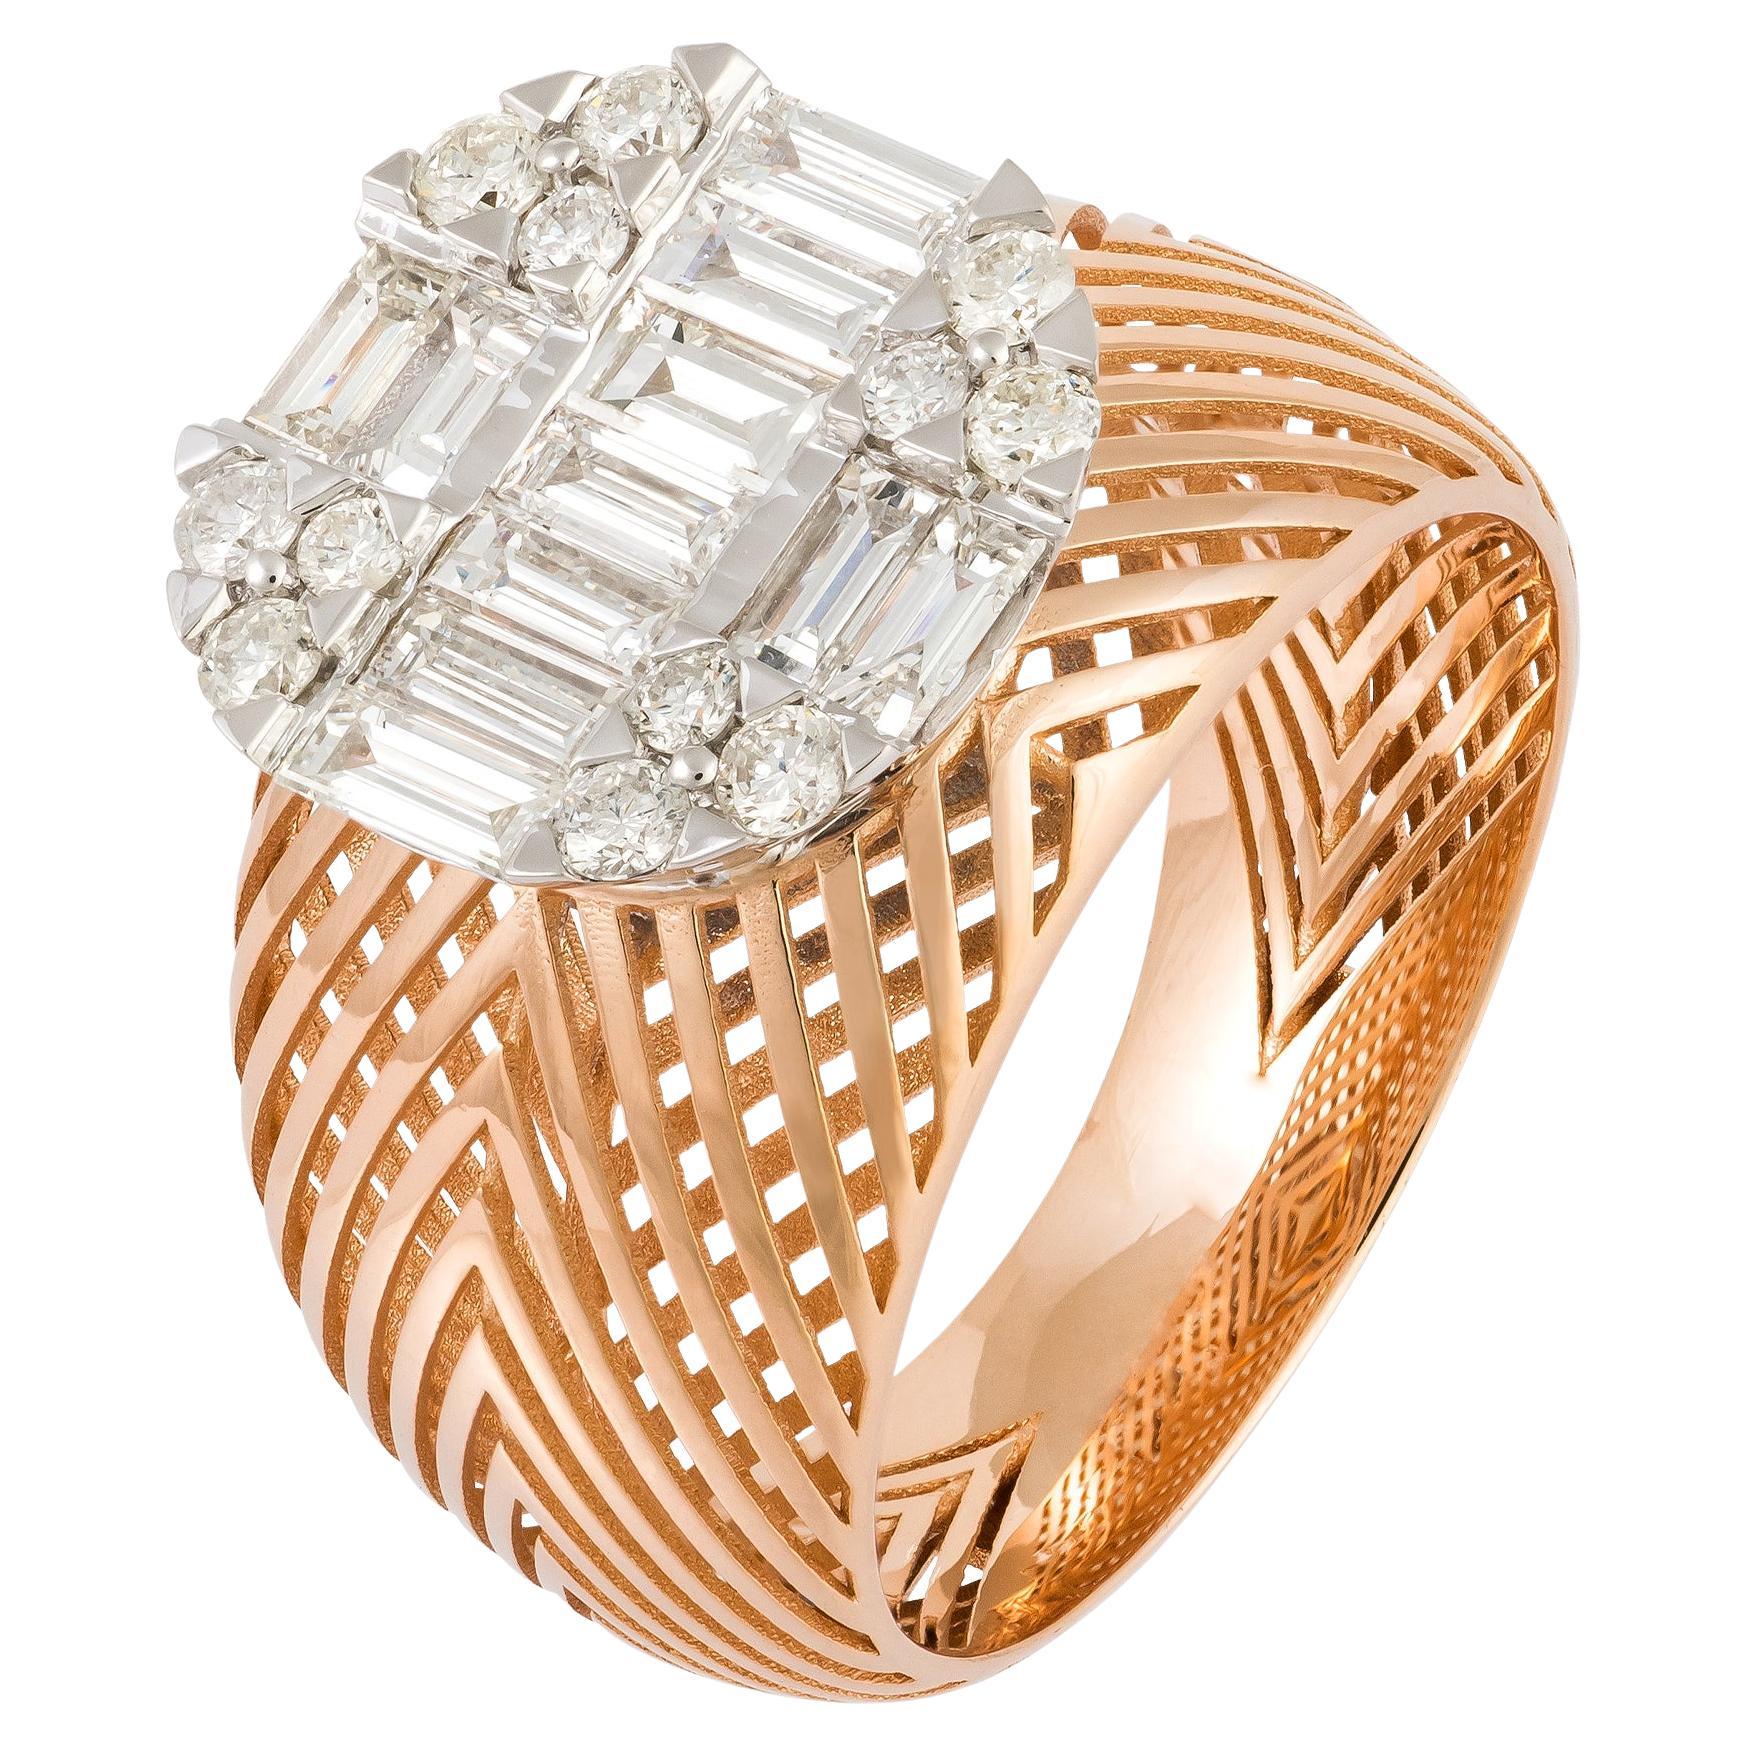 Monumental White Pink 18K Gold White Diamond Ring for Her